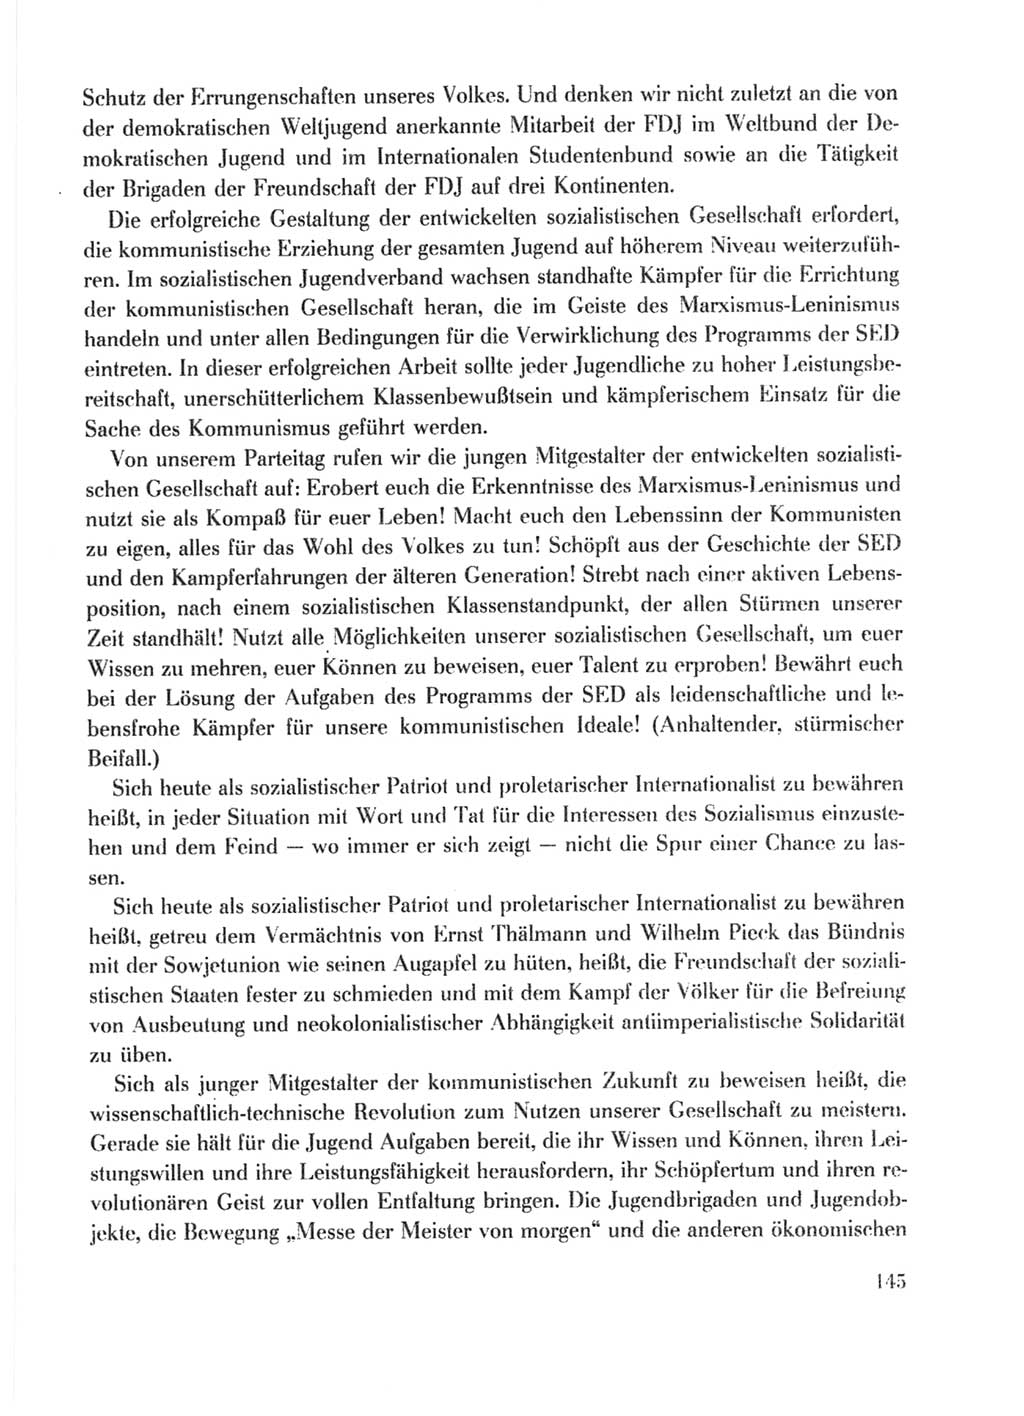 Protokoll der Verhandlungen des Ⅹ. Parteitages der Sozialistischen Einheitspartei Deutschlands (SED) [Deutsche Demokratische Republik (DDR)] 1981, Band 1, Seite 145 (Prot. Verh. Ⅹ. PT SED DDR 1981, Bd. 1, S. 145)